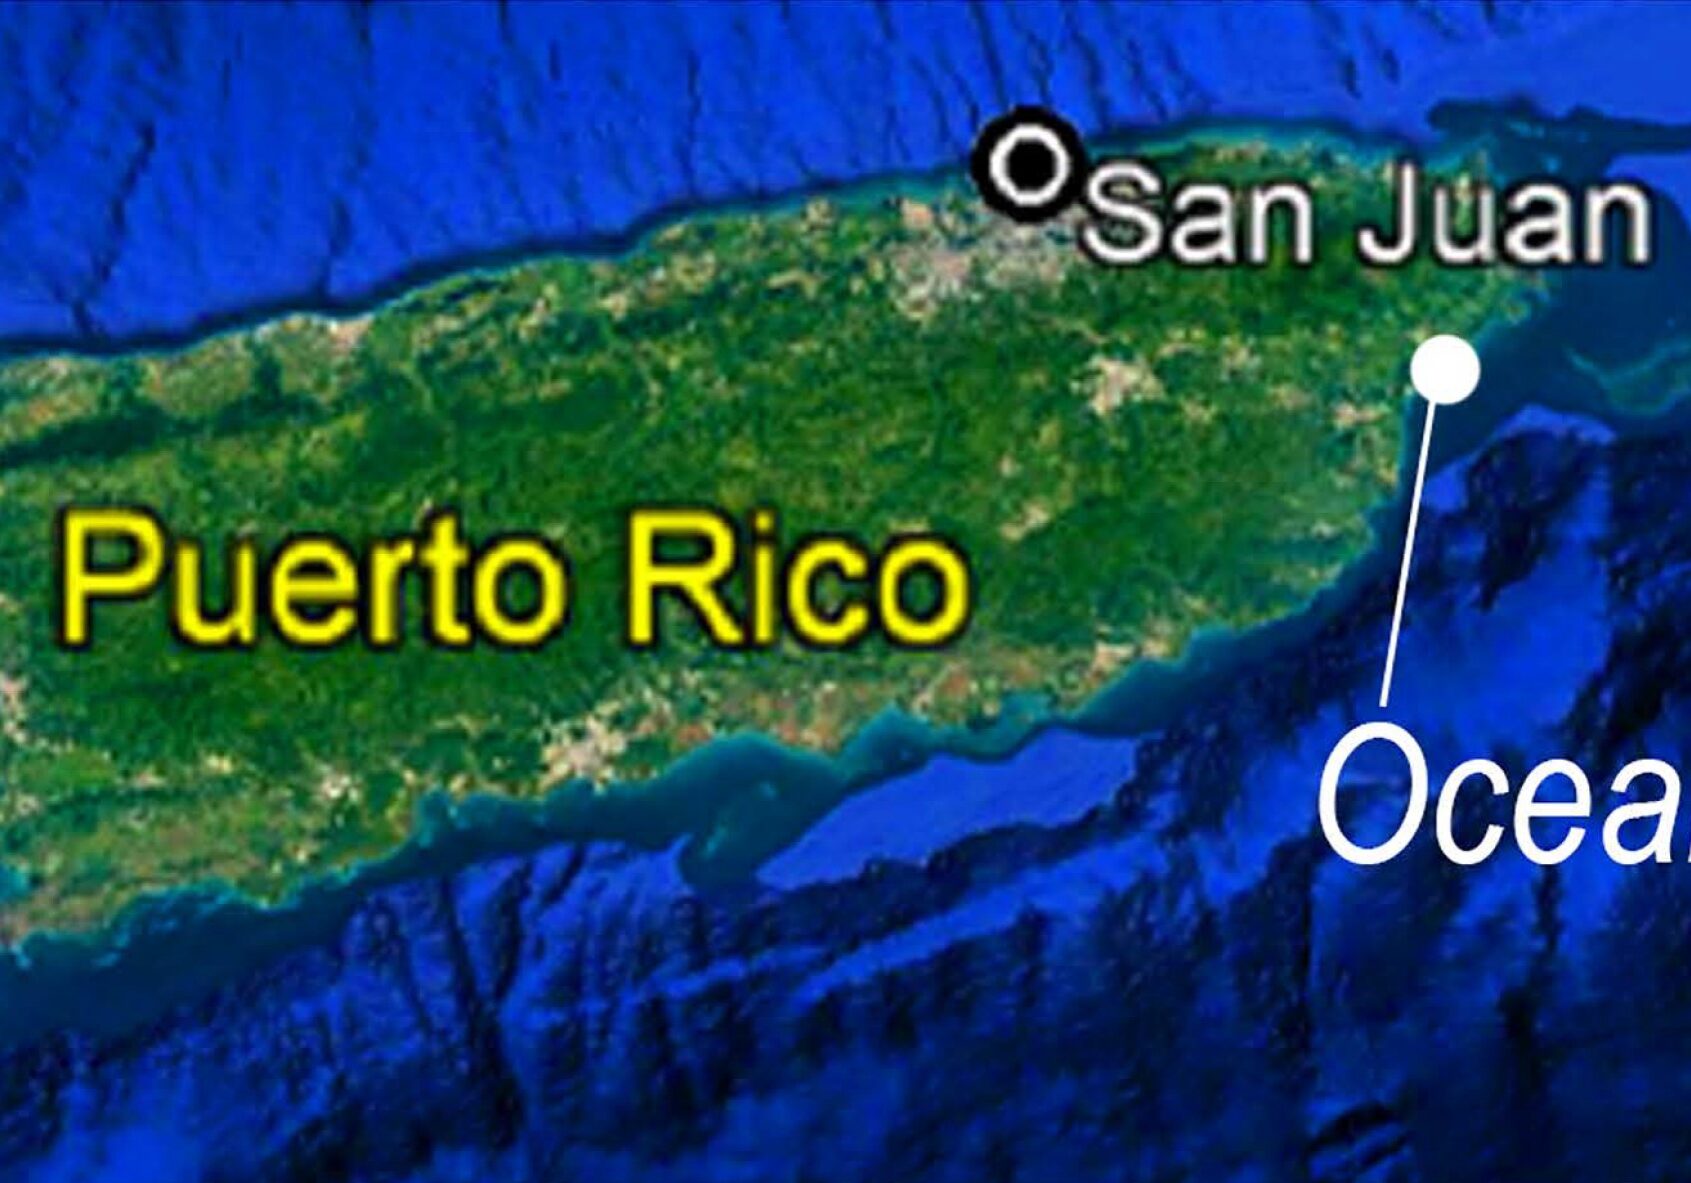 Oceano Location in Puerto Rico